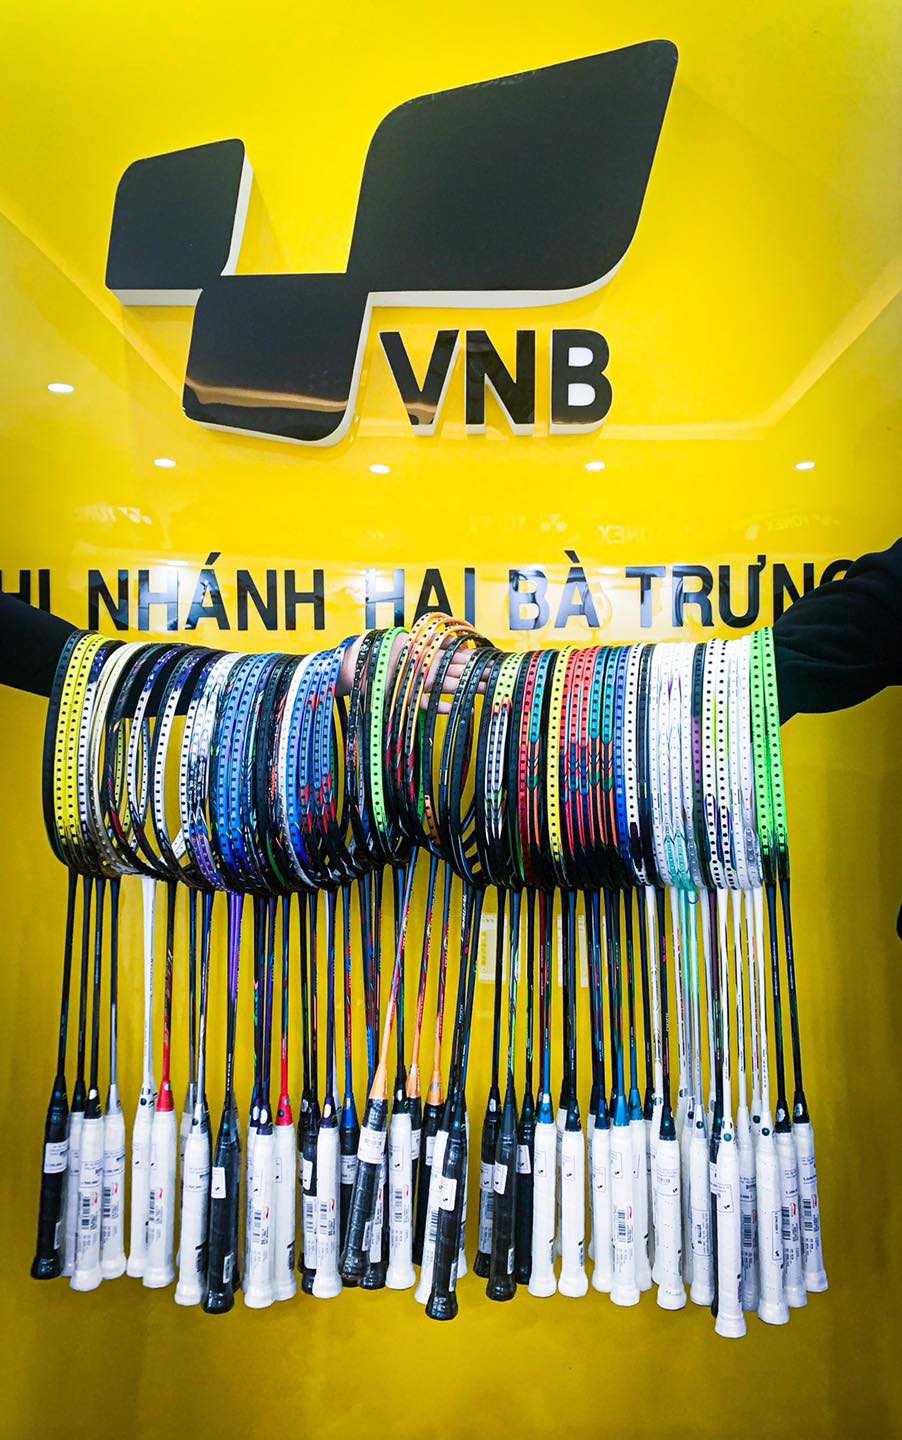 Shop cầu lông Hai Bà Trưng, Hà Nội - VNB Sports 